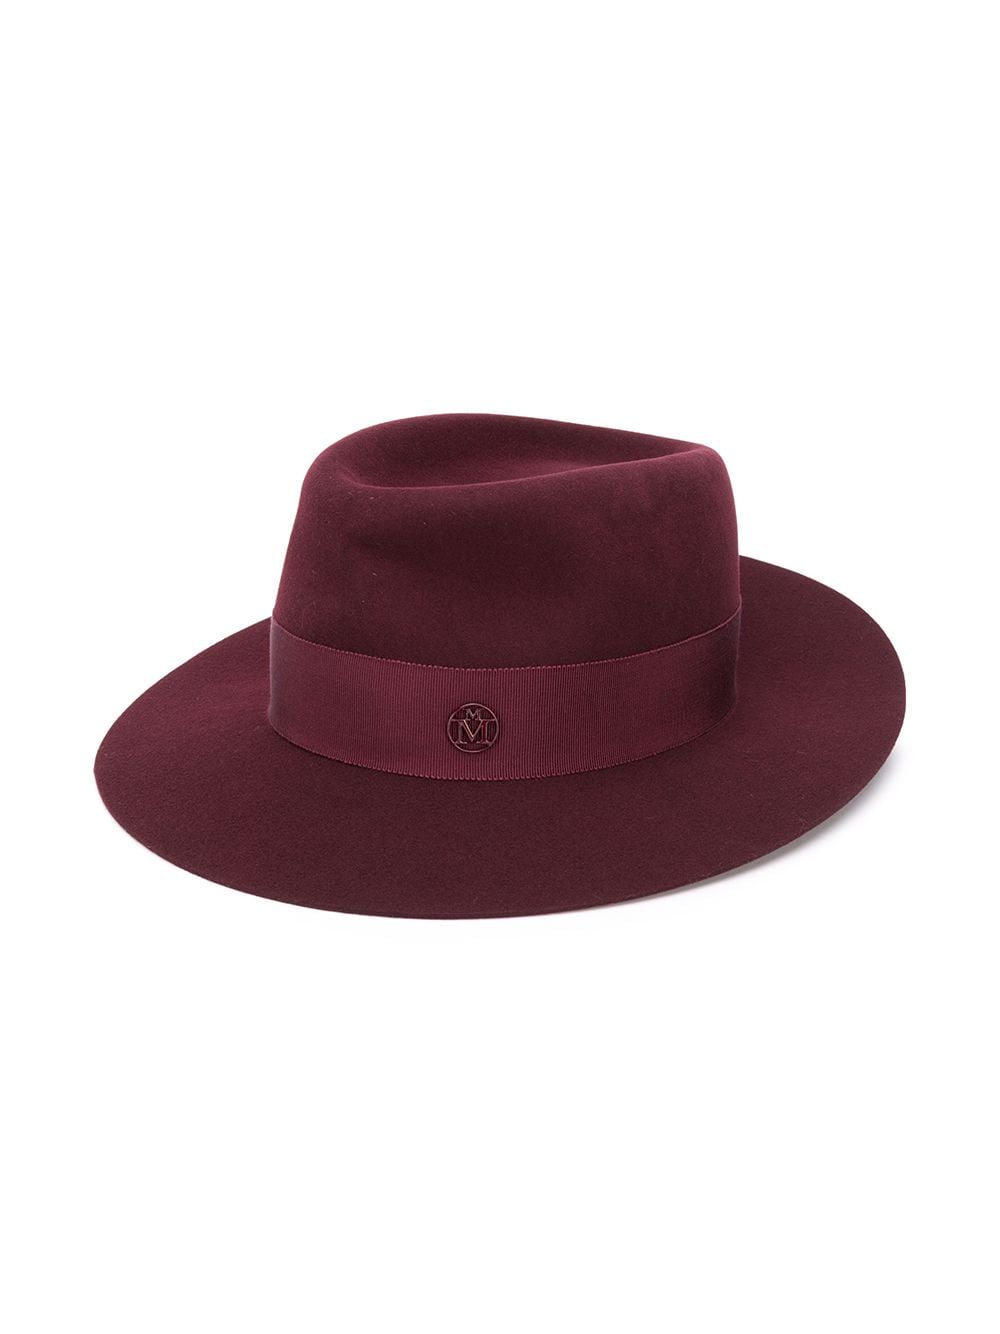 Image 2 of Maison Michel André felt Fedora hat